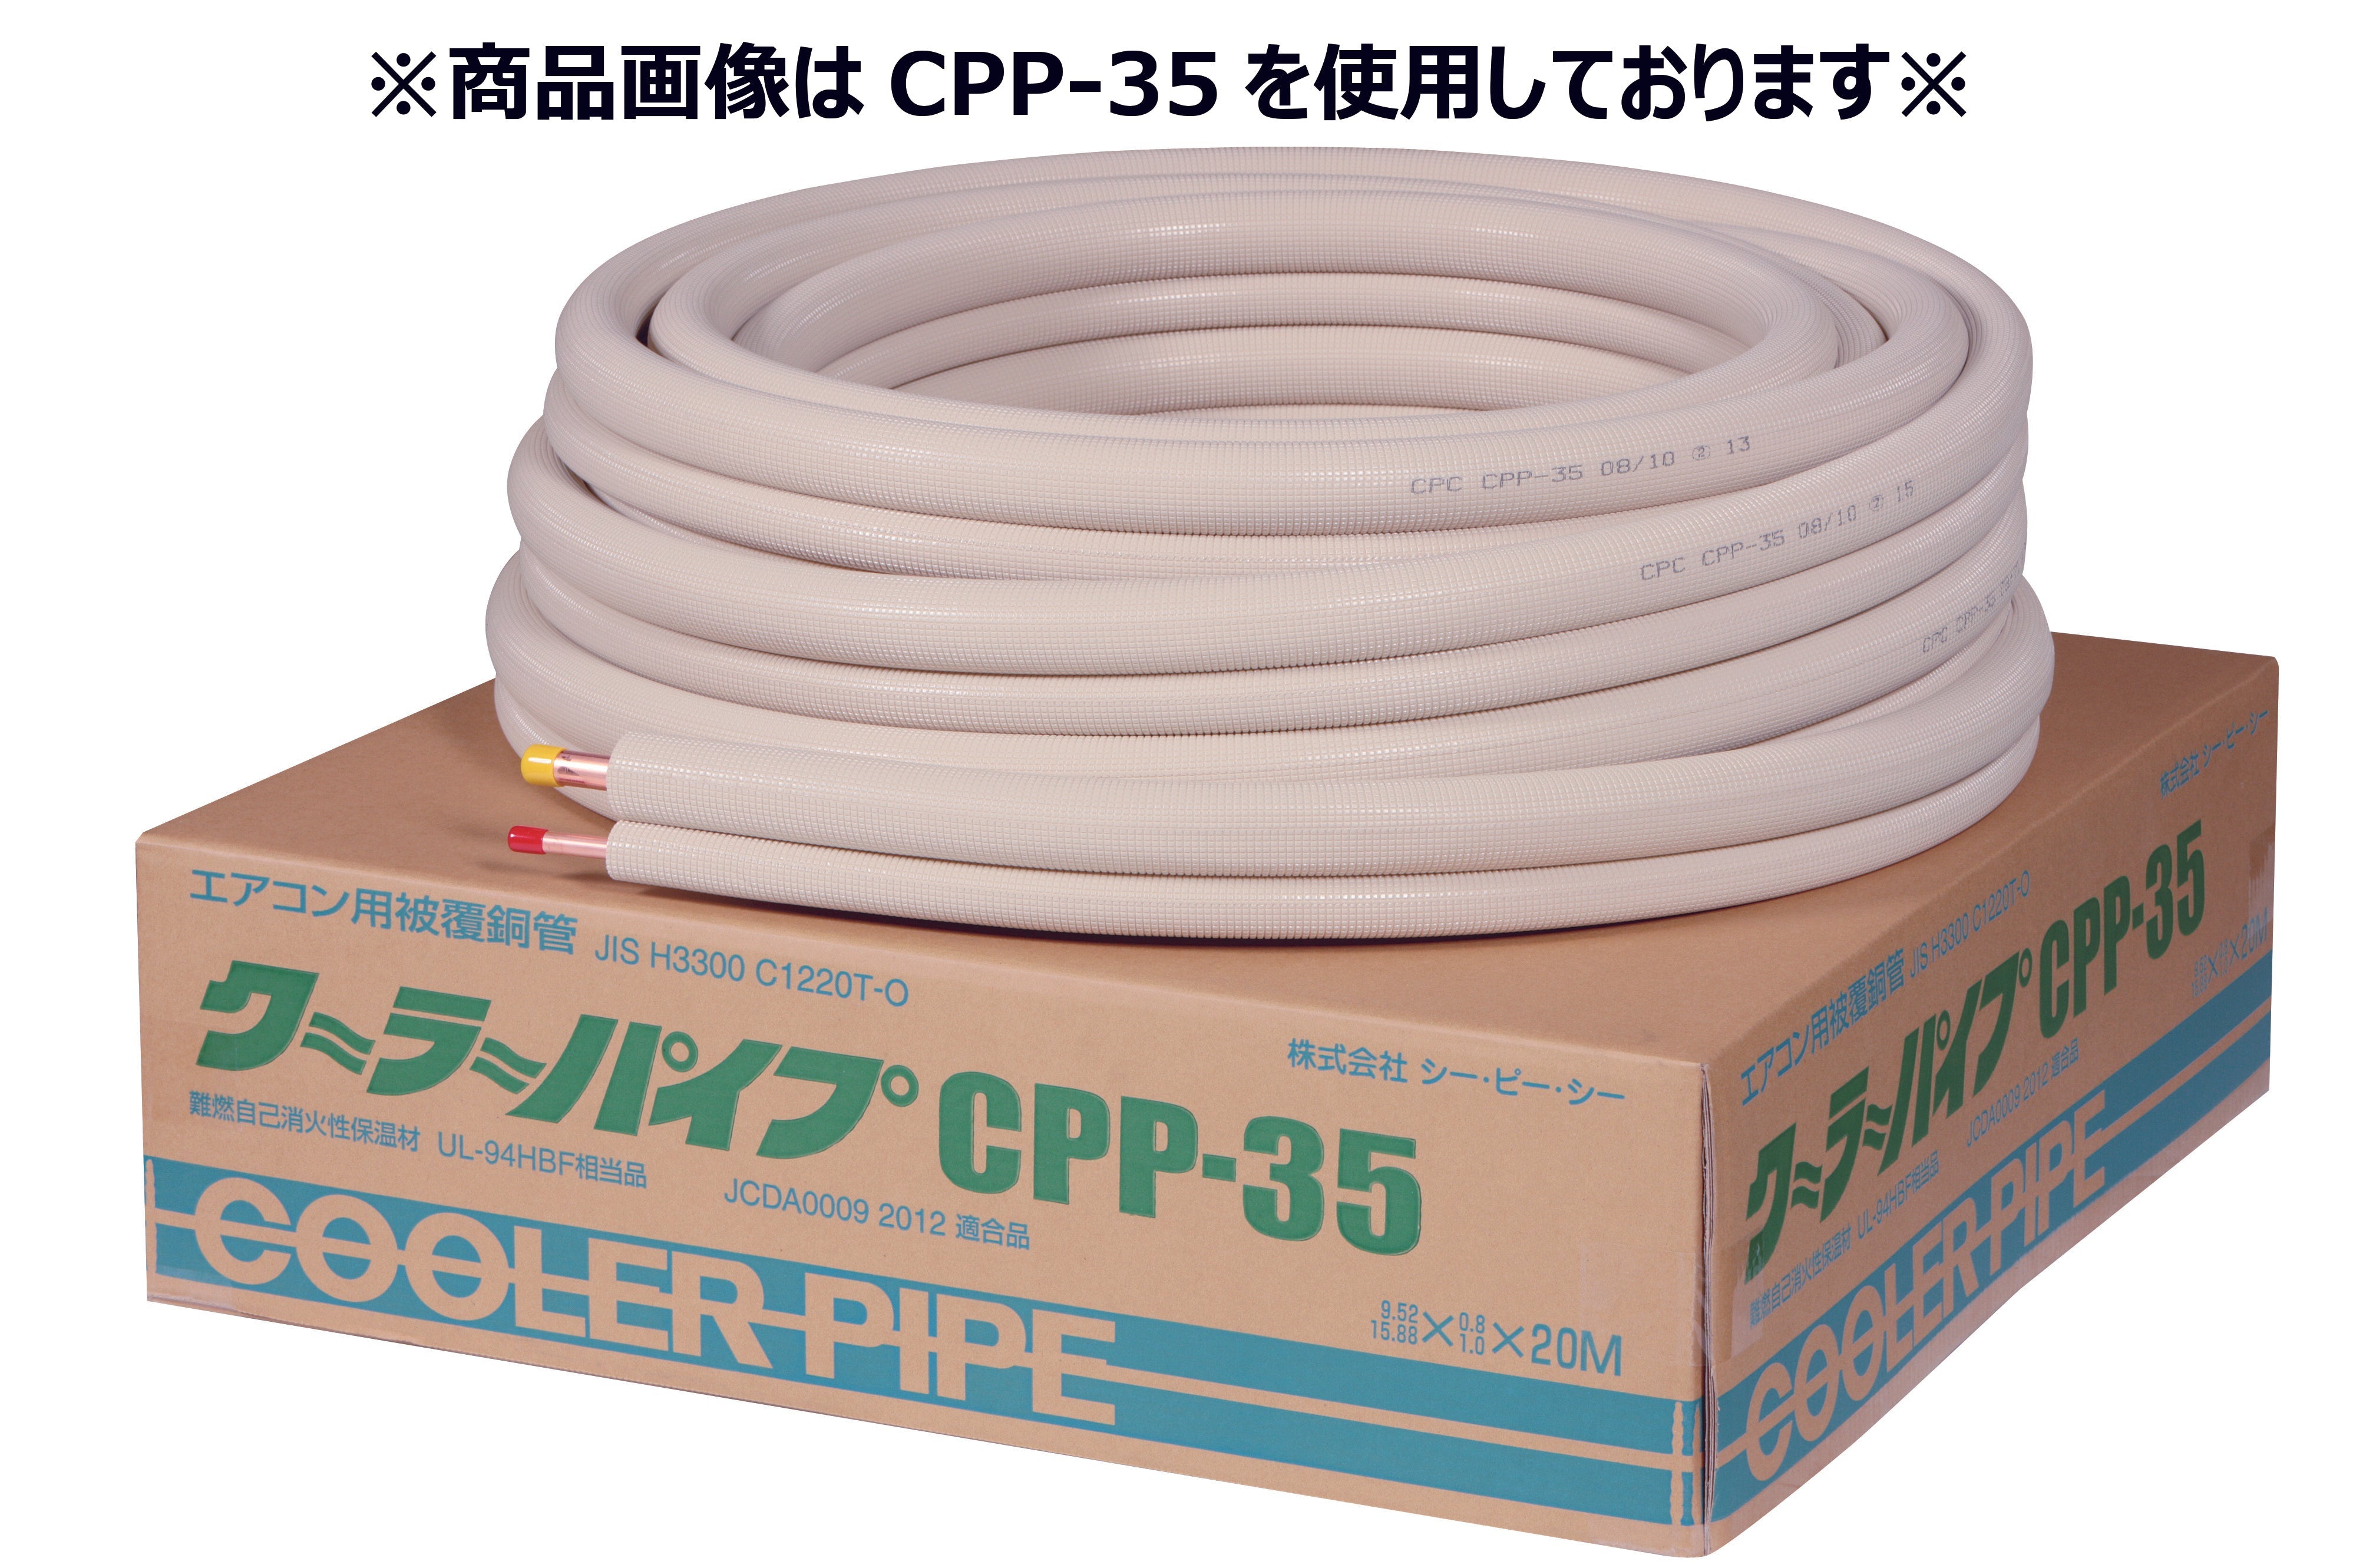 エアコン用冷媒被覆銅管 クーラーパイプCPP-24-10 ペアコイル2分(6.35